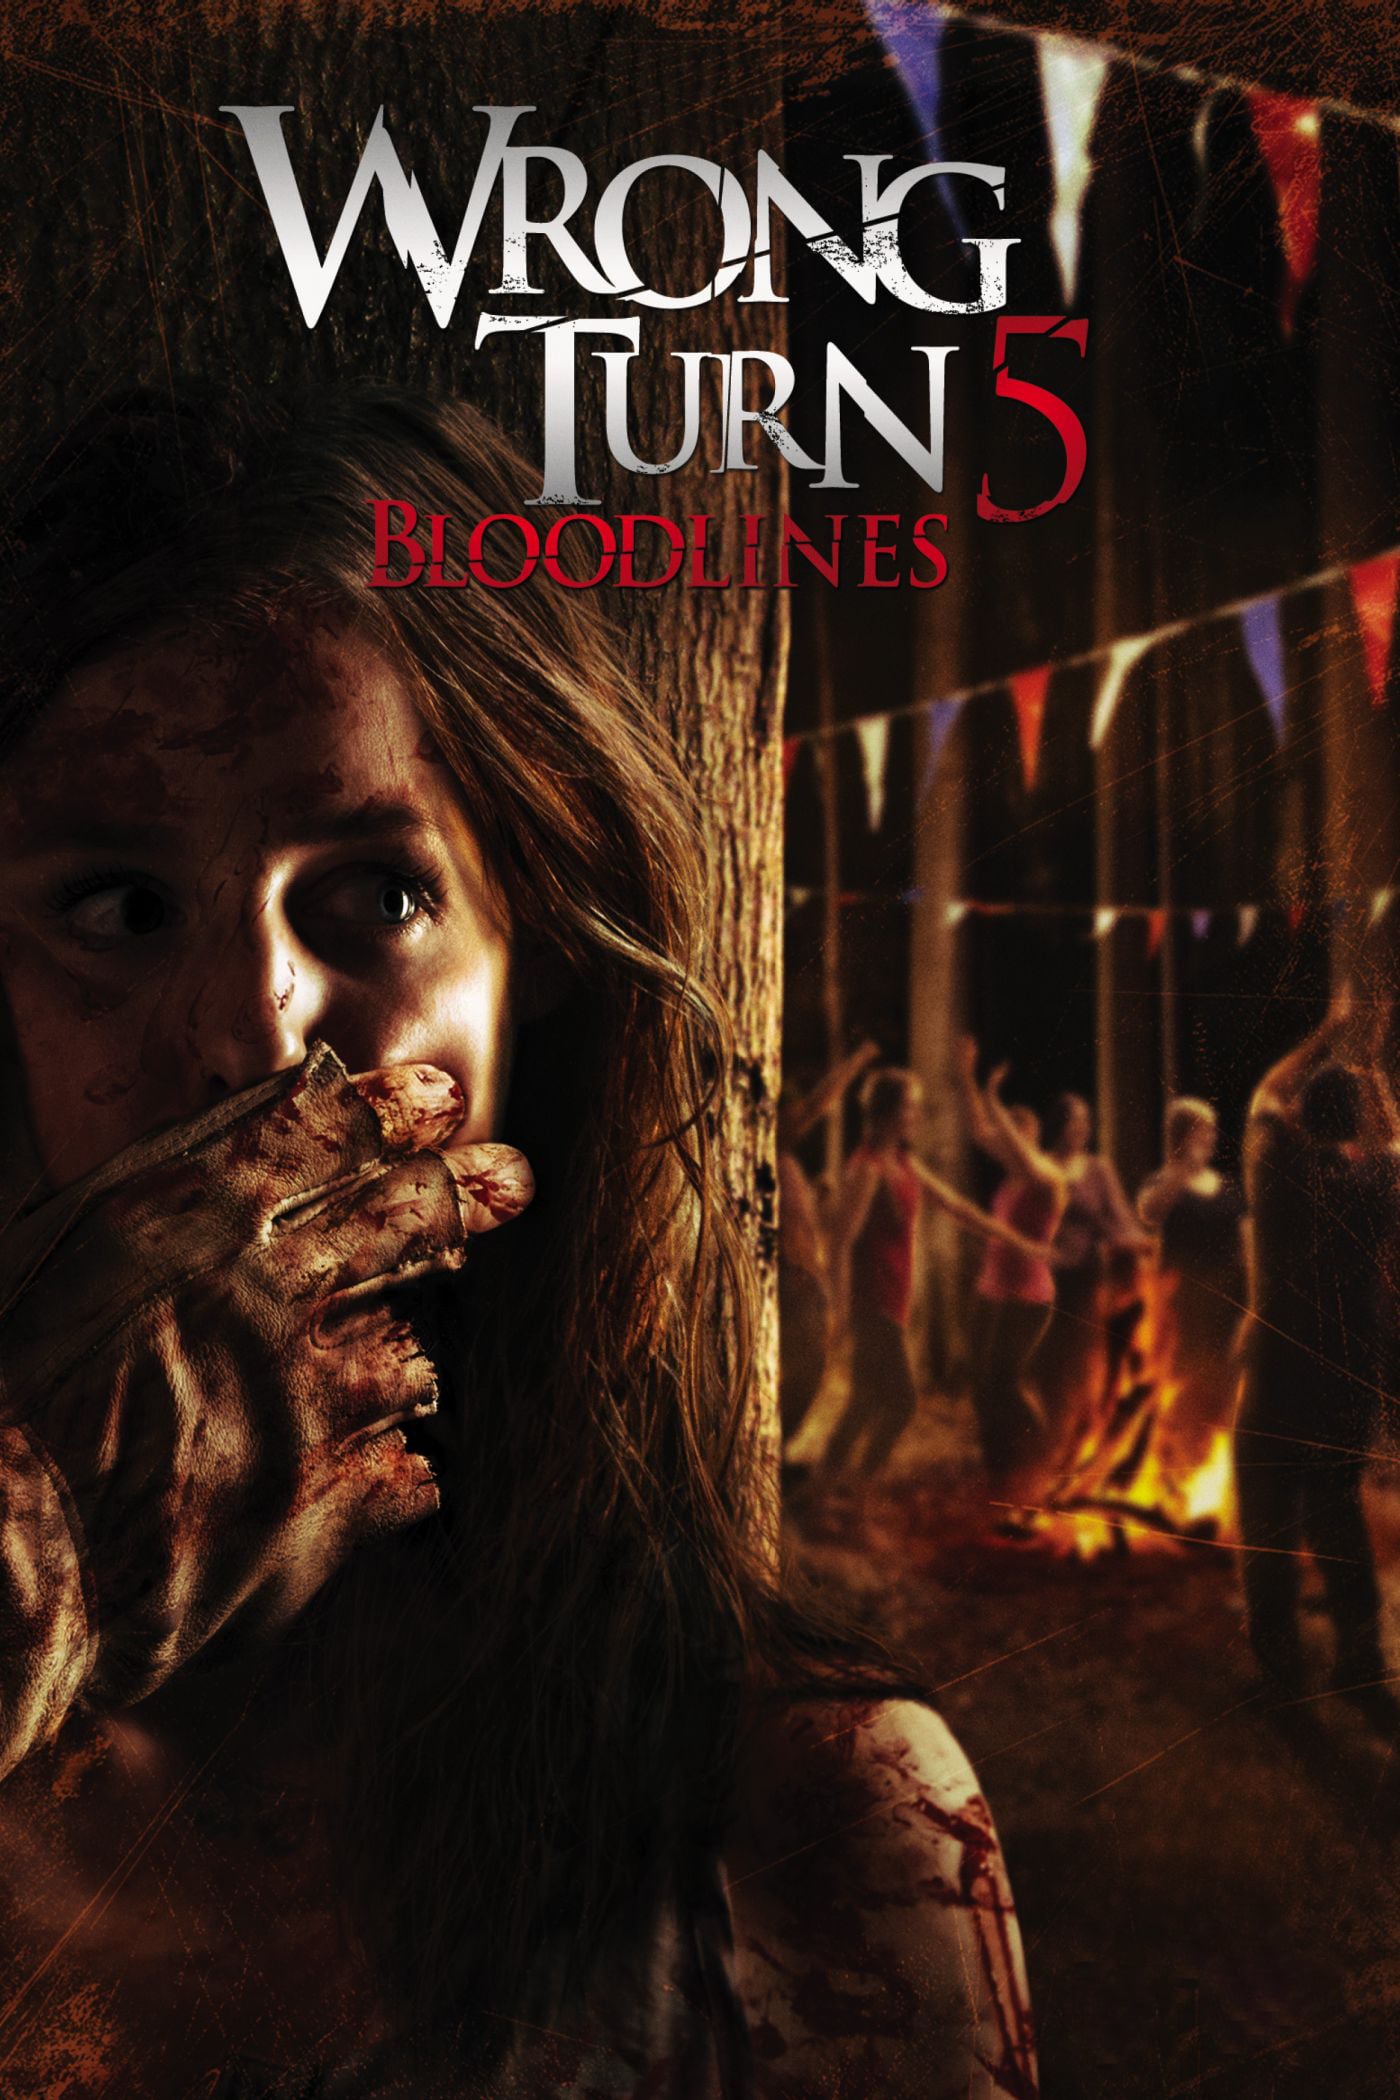 Plakat von "Wrong Turn 5: Bloodlines"